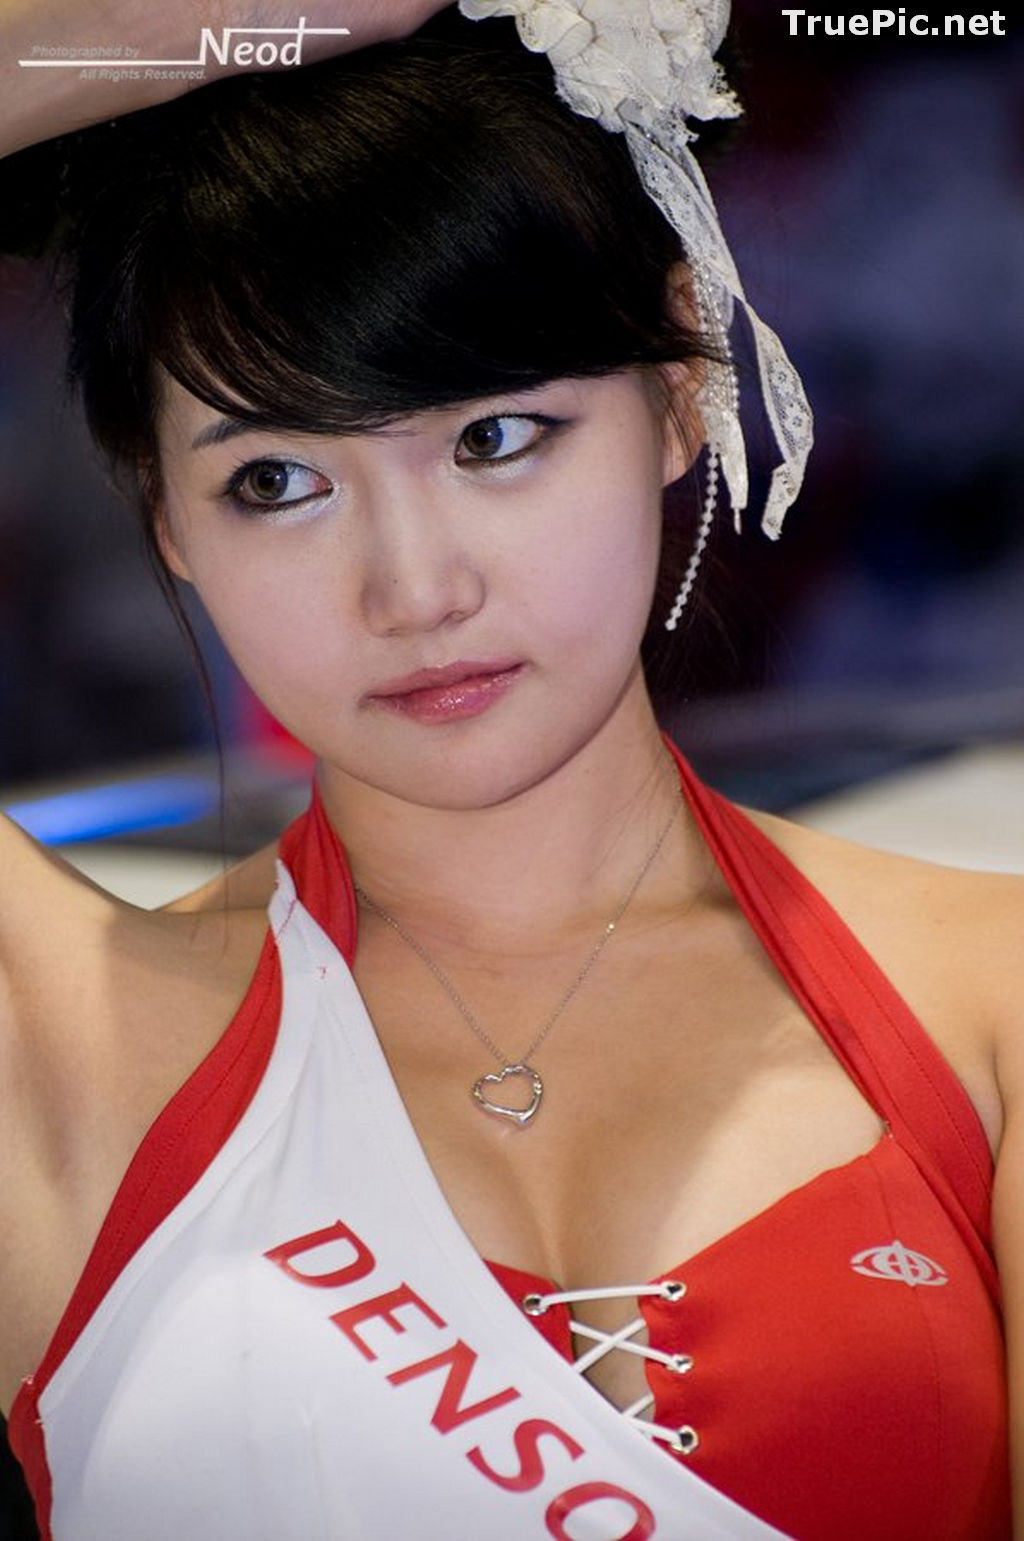 Image Best Beautiful Images Of Korean Racing Queen Han Ga Eun #4 - TruePic.net - Picture-46